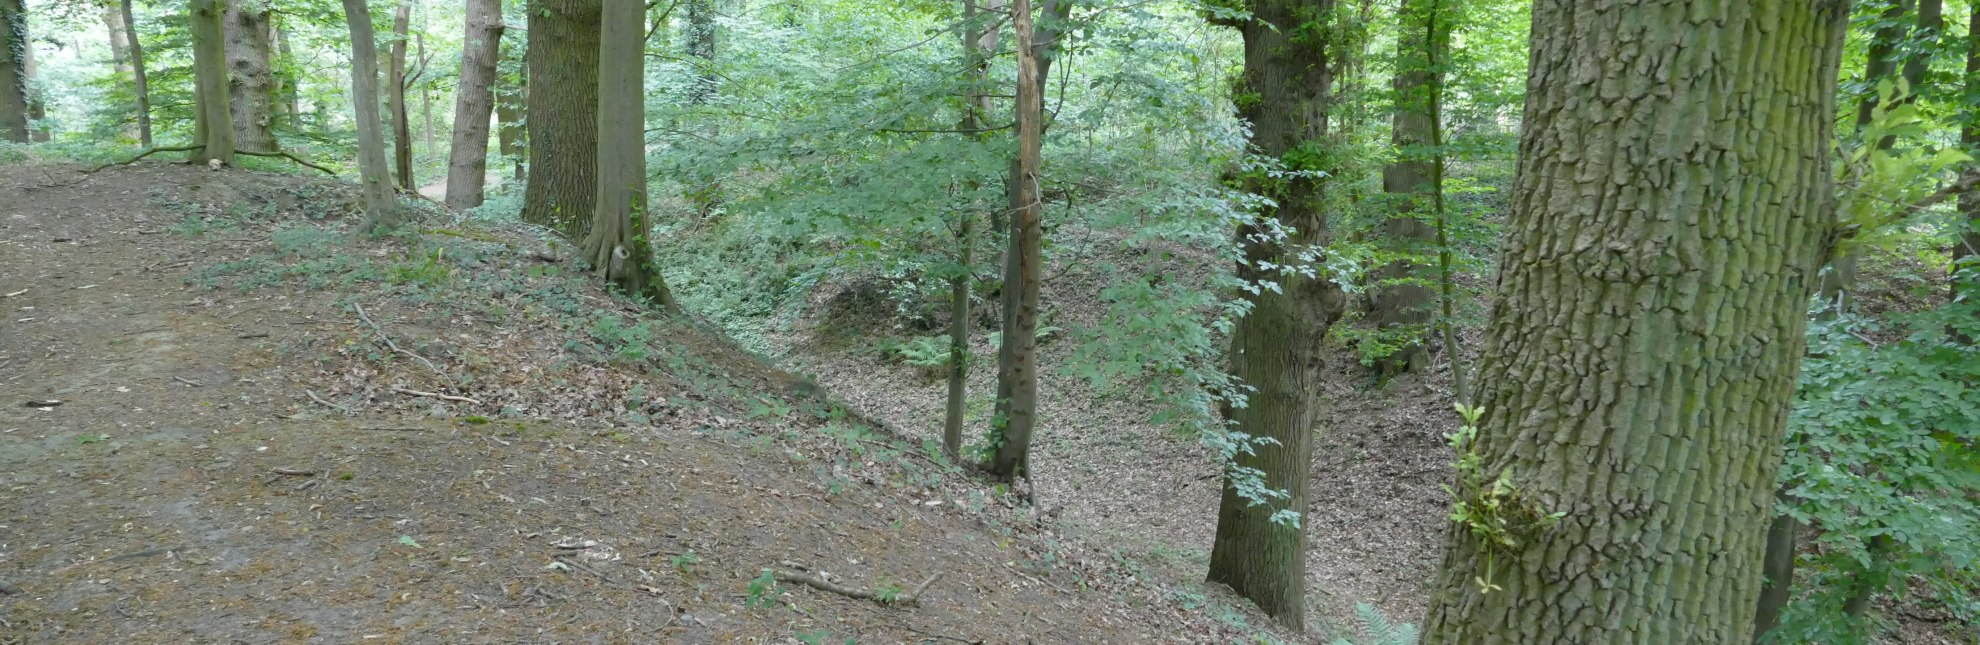 Strukturen im Wald lassen die ehemalige Erthenburg erahnen, © Mareike Bodendieck